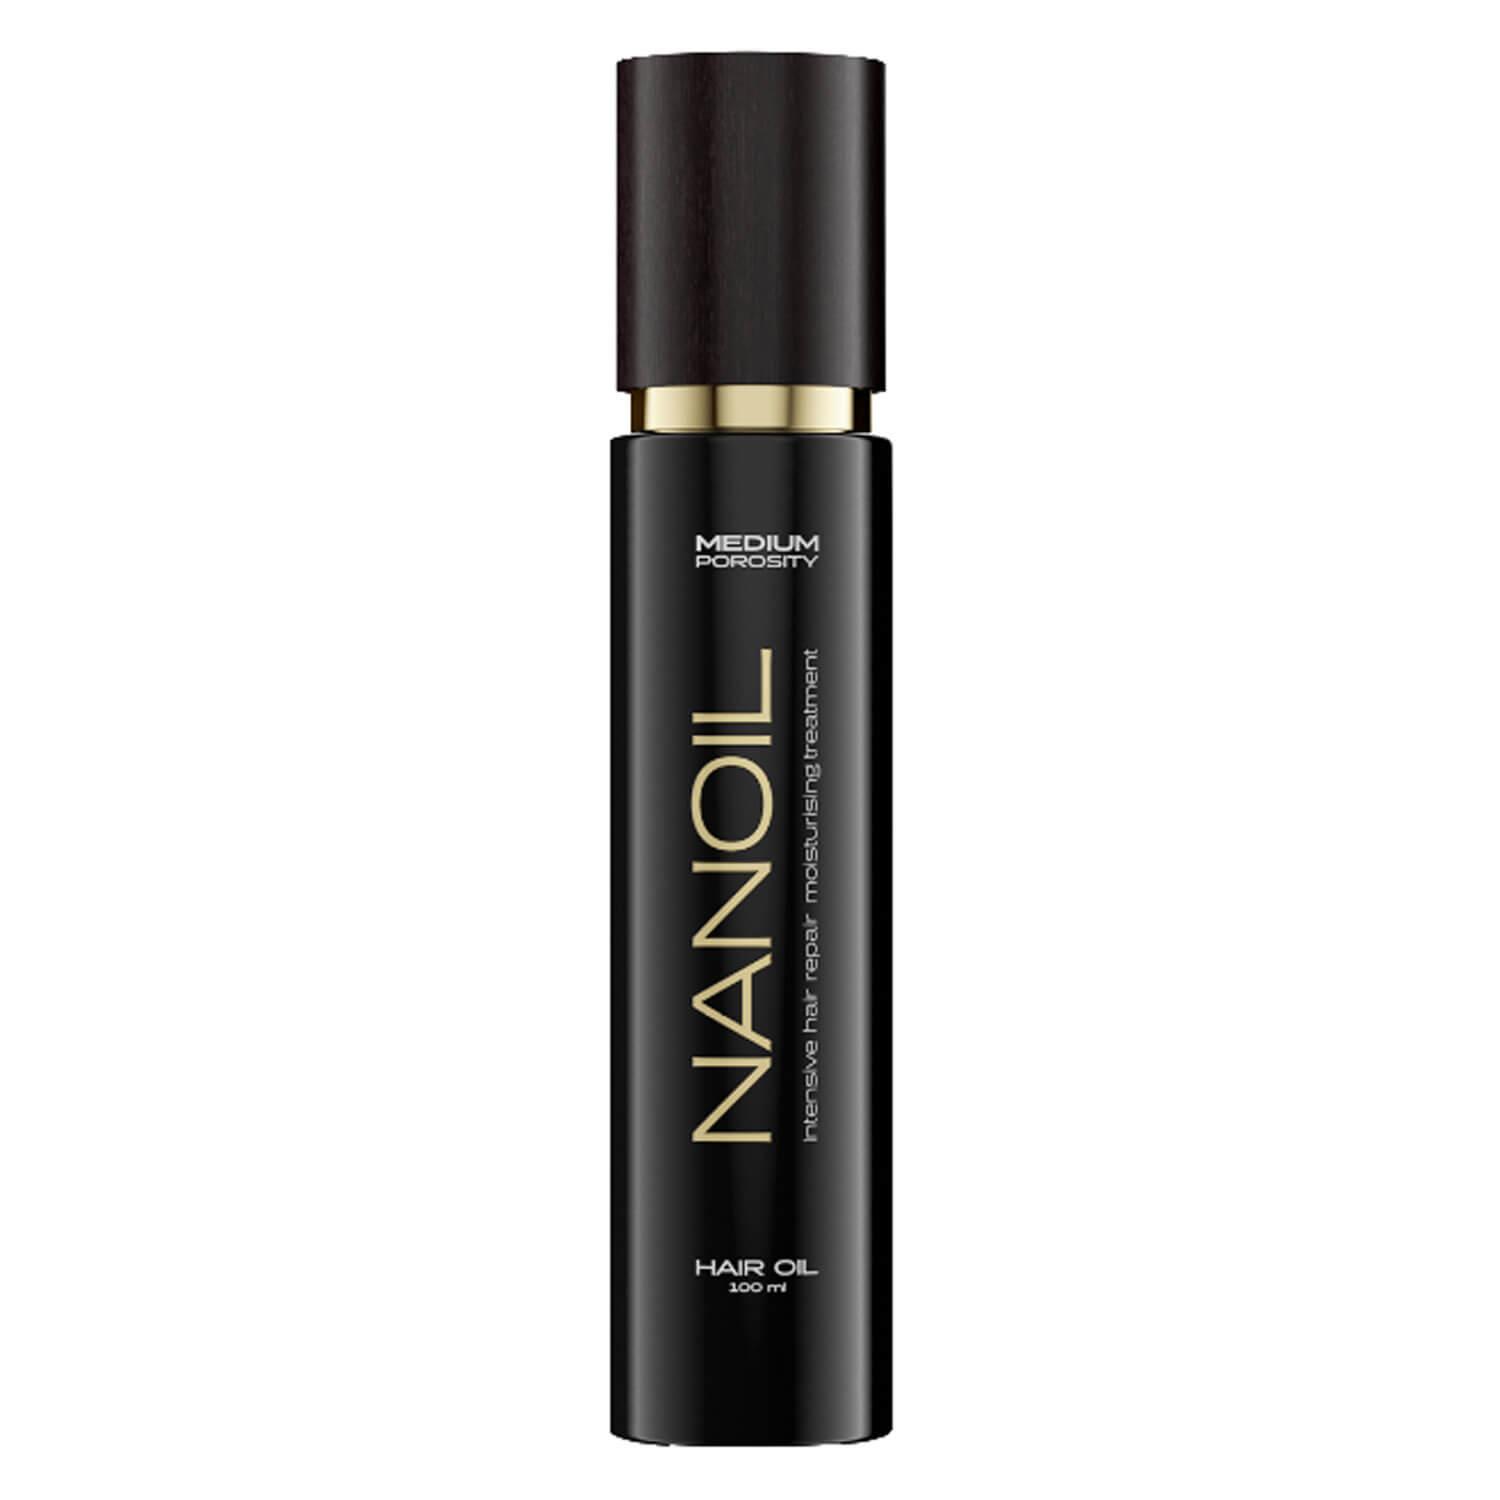 Nanoil - Medium Porosity Hair Oil